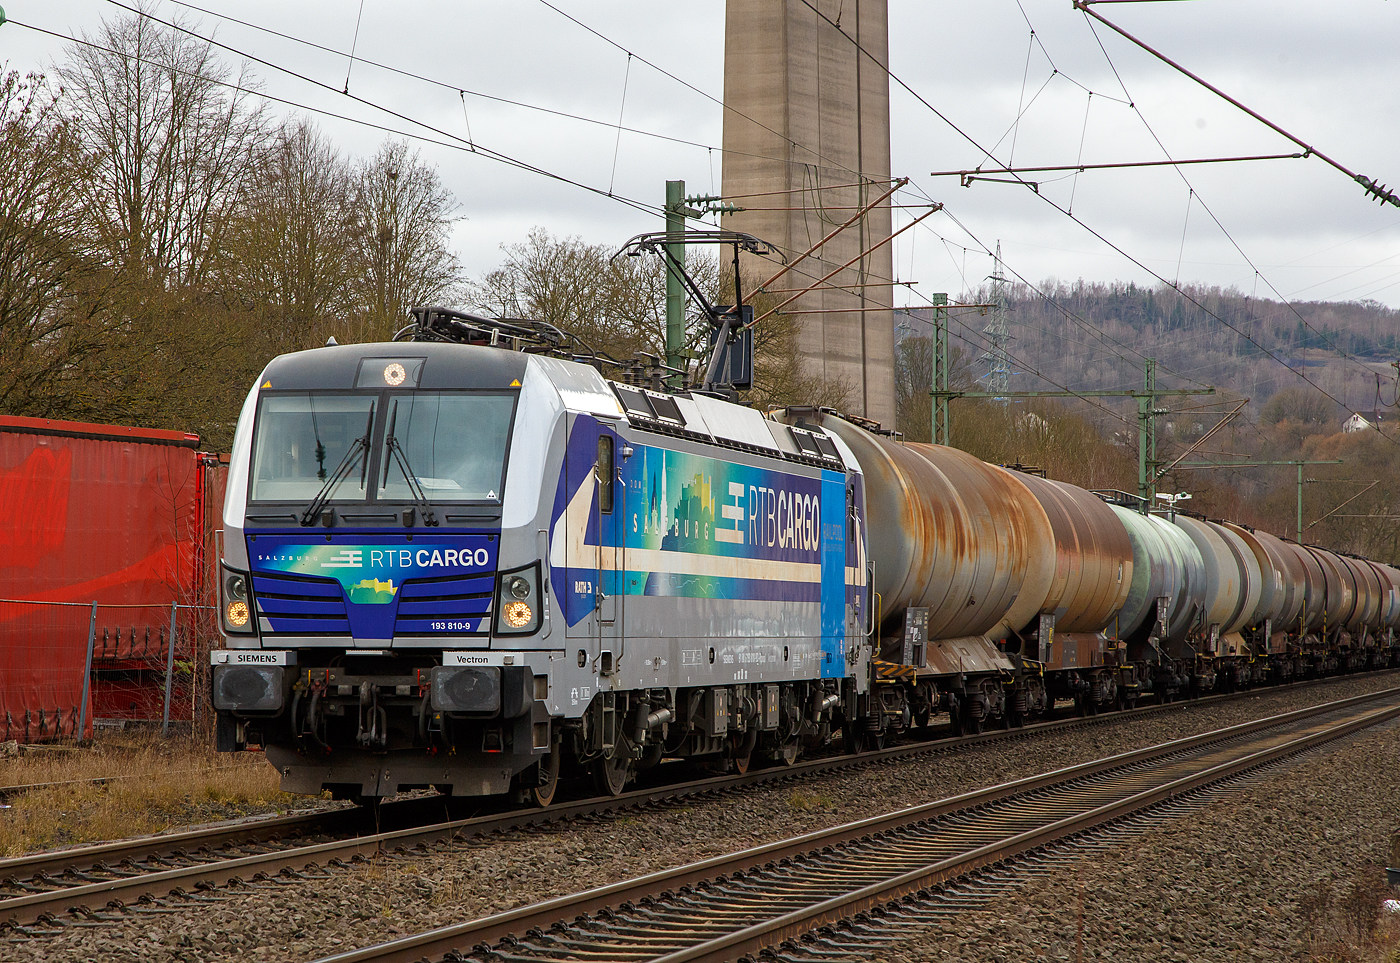 Die an die RTB Cargo GmbH vermietete SIEMENS Vectron AC – 193 810-9 „Salzburg“ (91 80 6193 810-9 D-Rpool) der Railpool GmbH (München), fährt am 22.03.2021 mit einem Kesselwagenzug durch Siegen-Eiserfeld in Richtung Siegen. 

Die Siemens Vectron AC wurde 2014 von Siemens Mobility GmbH in München-Allach unter der Fabriknummer 21898 gebaut und an die Railpool GmbH in München geliefert. Diese Vectron Lokomotive ist als AC – Lokomotive (Wechselstrom-Variante) mit 6.400 kW konzipiert und zugelassen für Deutschland, Österreich, Ungarn und Rumänien, sie hat eine Höchstgeschwindigkeit von 200 km/h.